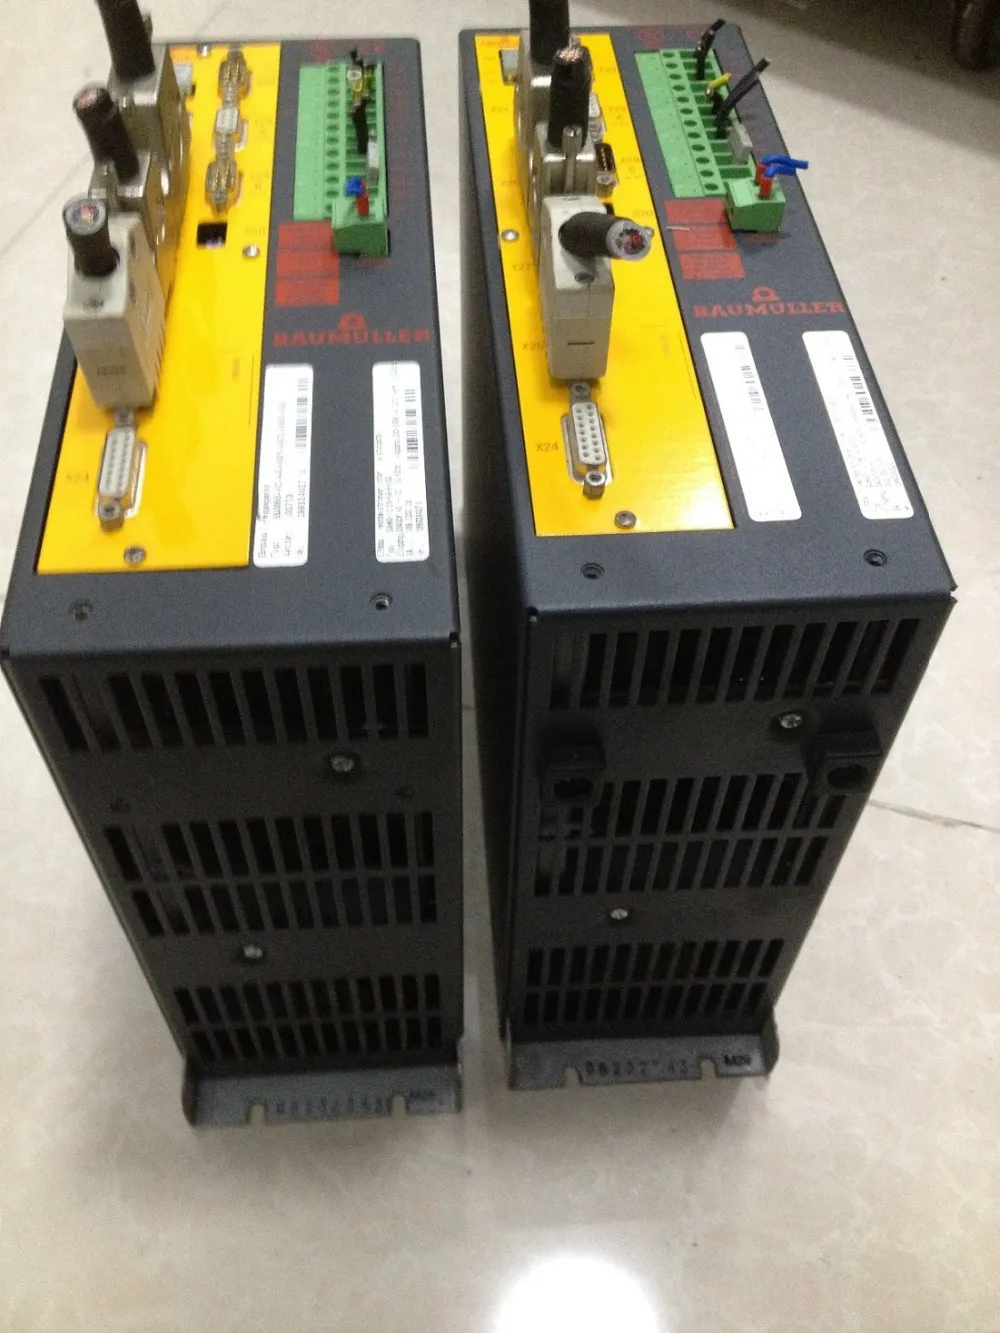 BUM60-12/24-54-B-000 servoazionamento con scheda BUM60-VC-A0-0001 uesd in buone condizioni può funzionare normalmente